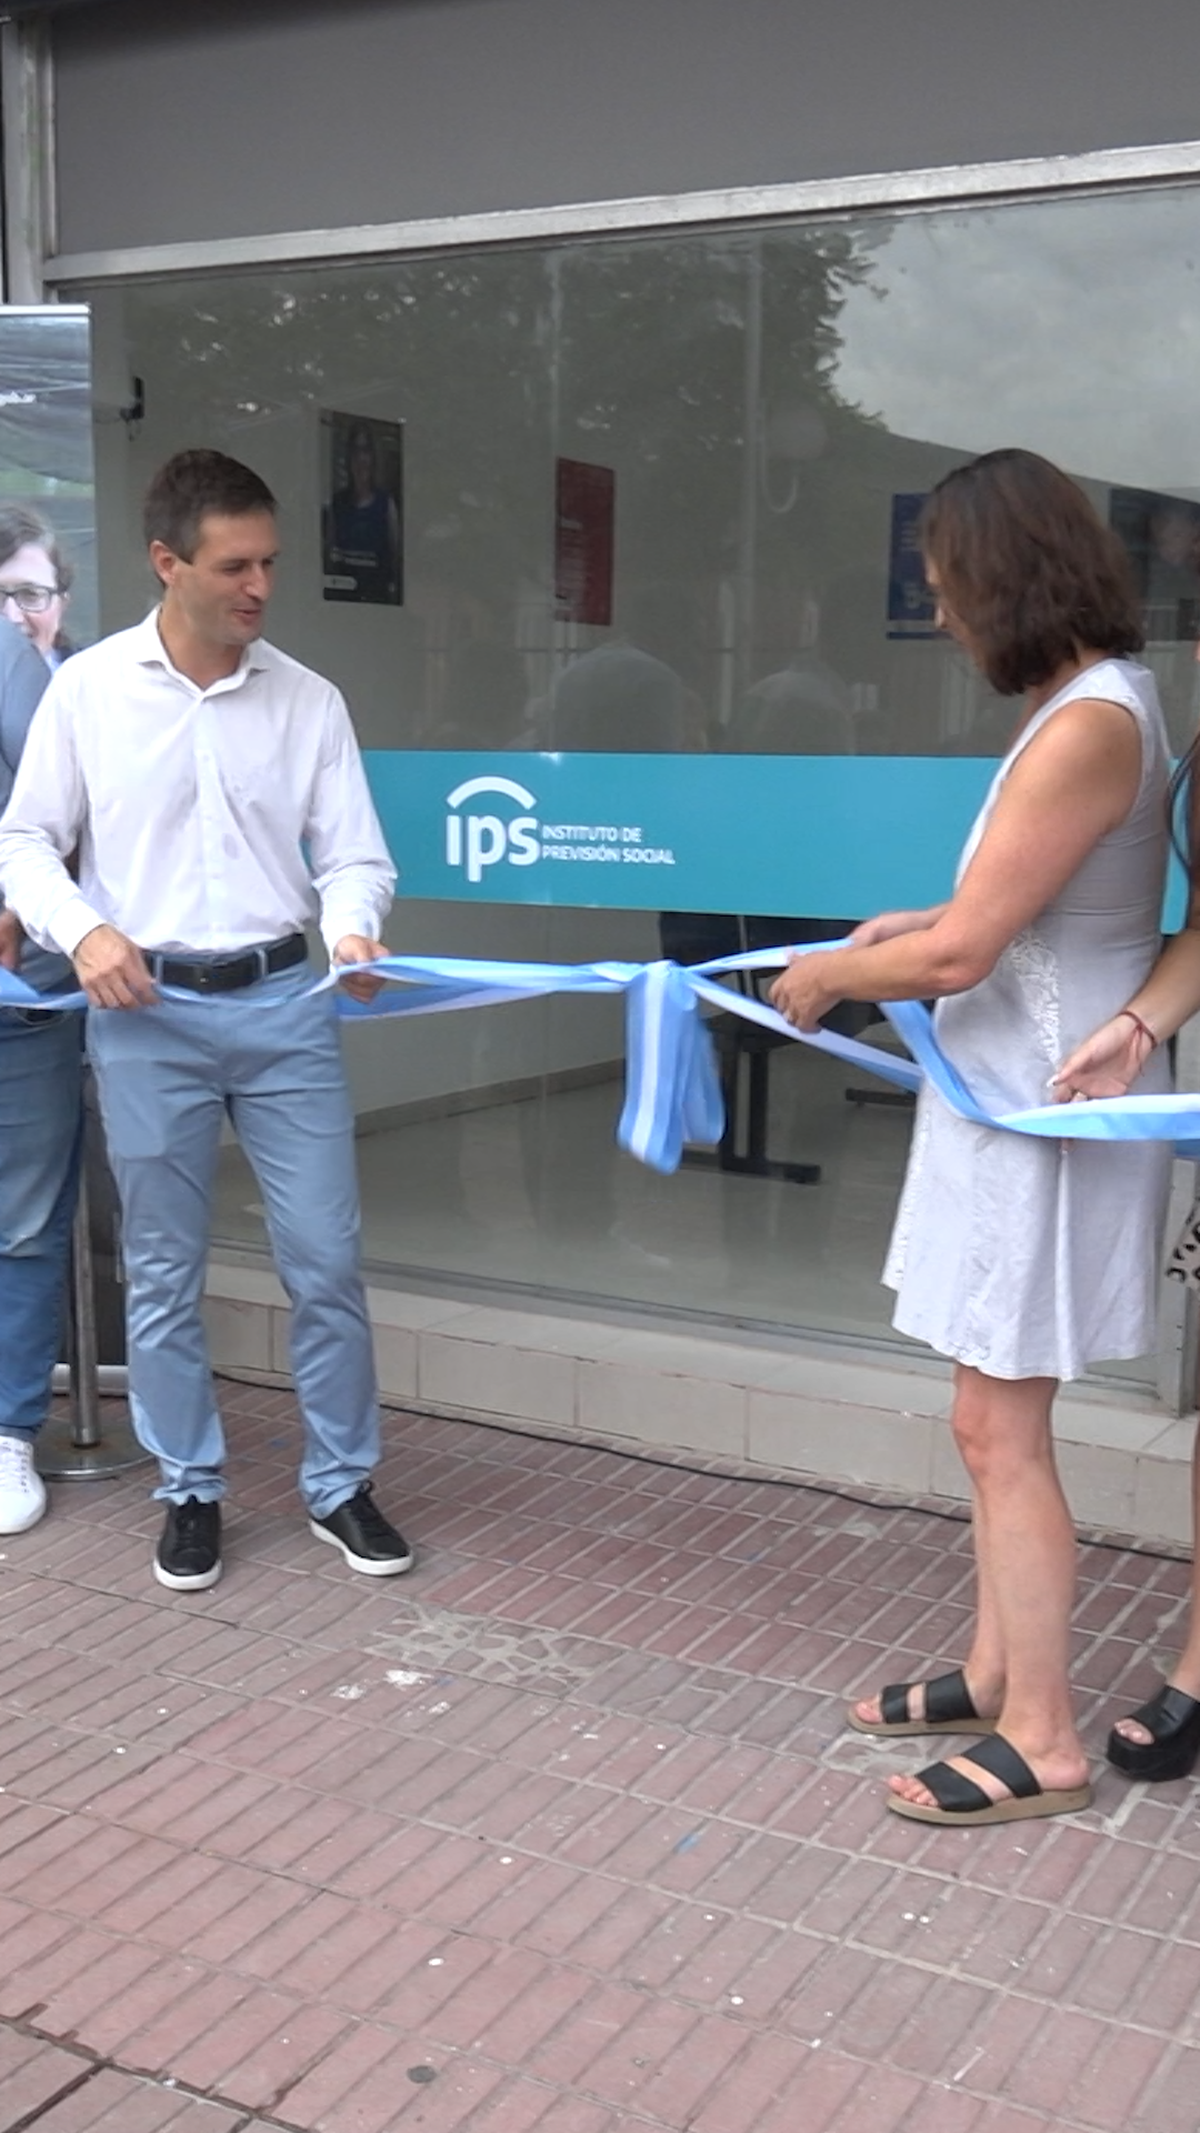 Inauguraron la sede del Instituto de Previsión Social en Alejandro Korn: qué trámites se podrán hacer